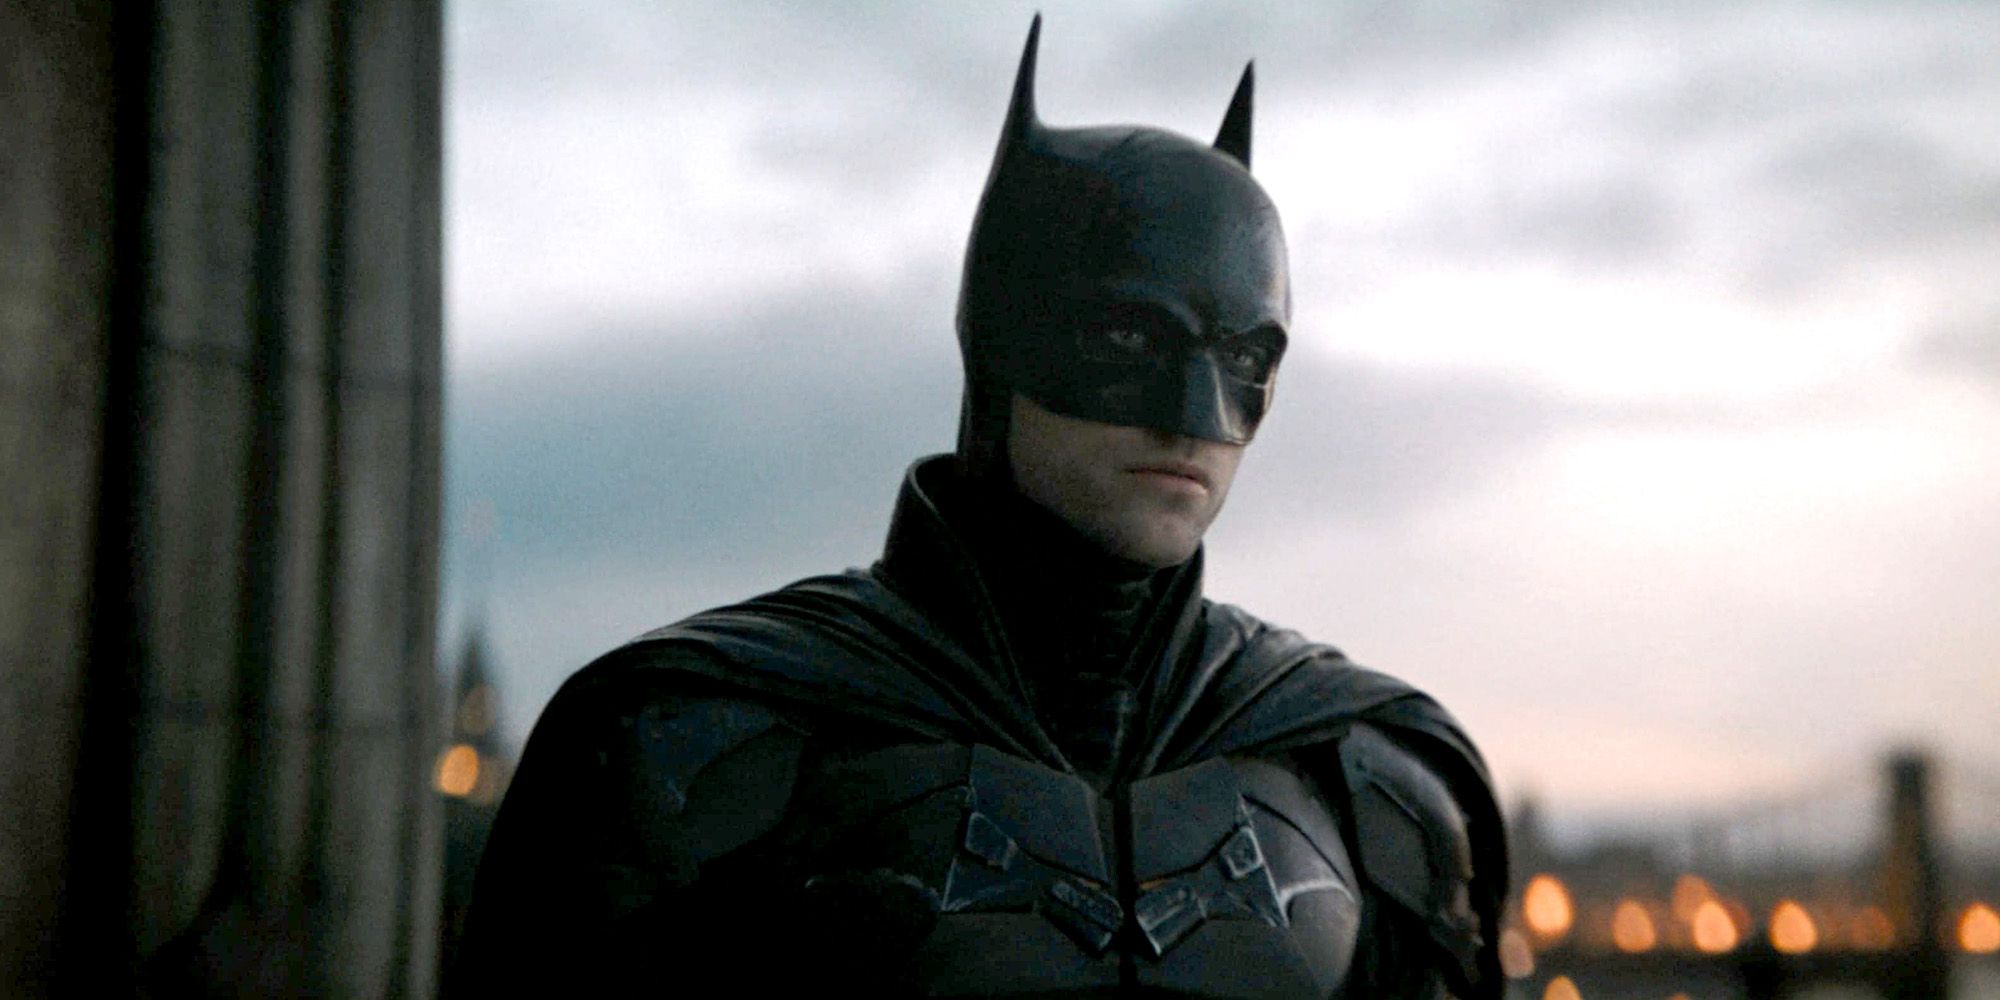 The Batman 2022 Robert Pattinson as Batman standing on a rooftop